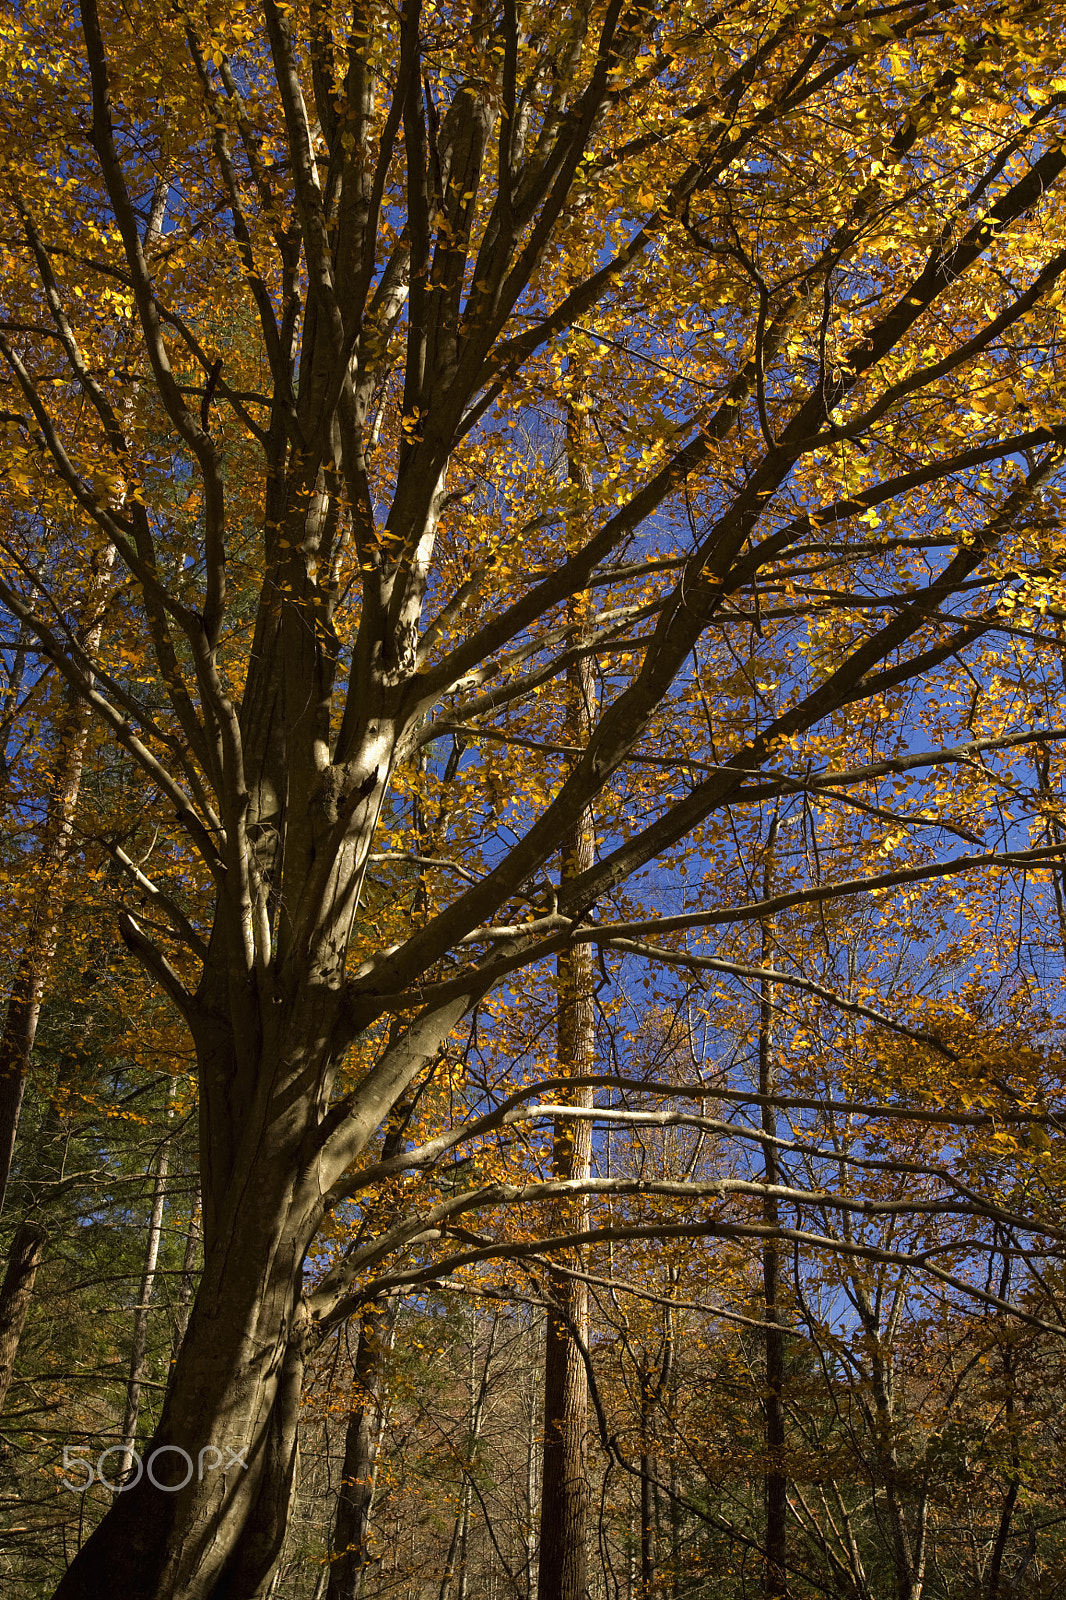 Canon EOS 5D sample photo. Autumn, hwy 32 near cosby, tn photography